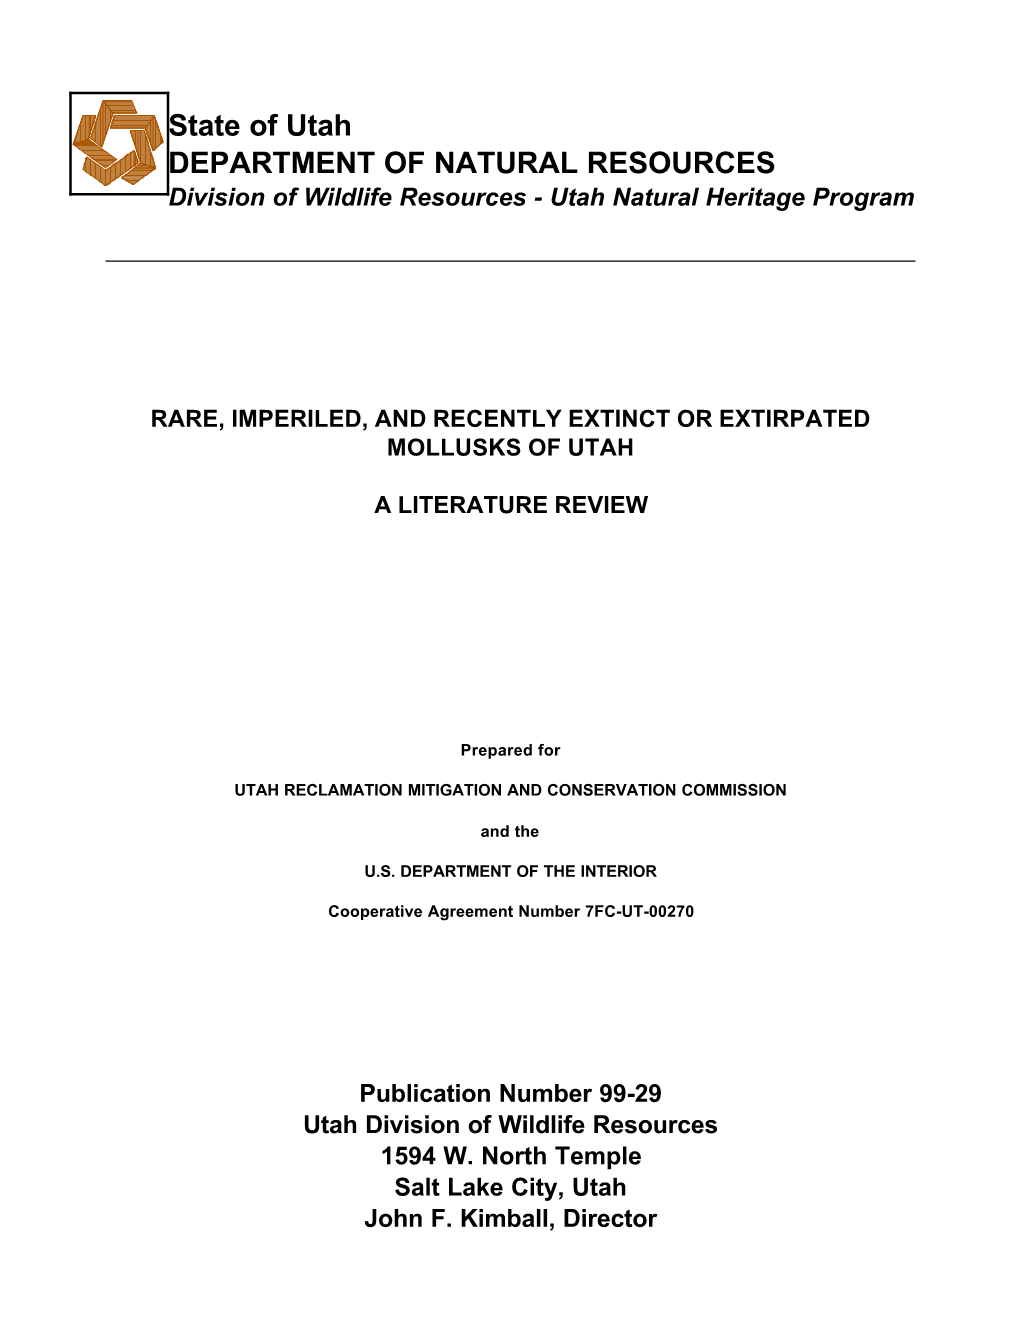 State of Utah DEPARTMENT of NATURAL RESOURCES Division of Wildlife Resources - Utah Natural Heritage Program